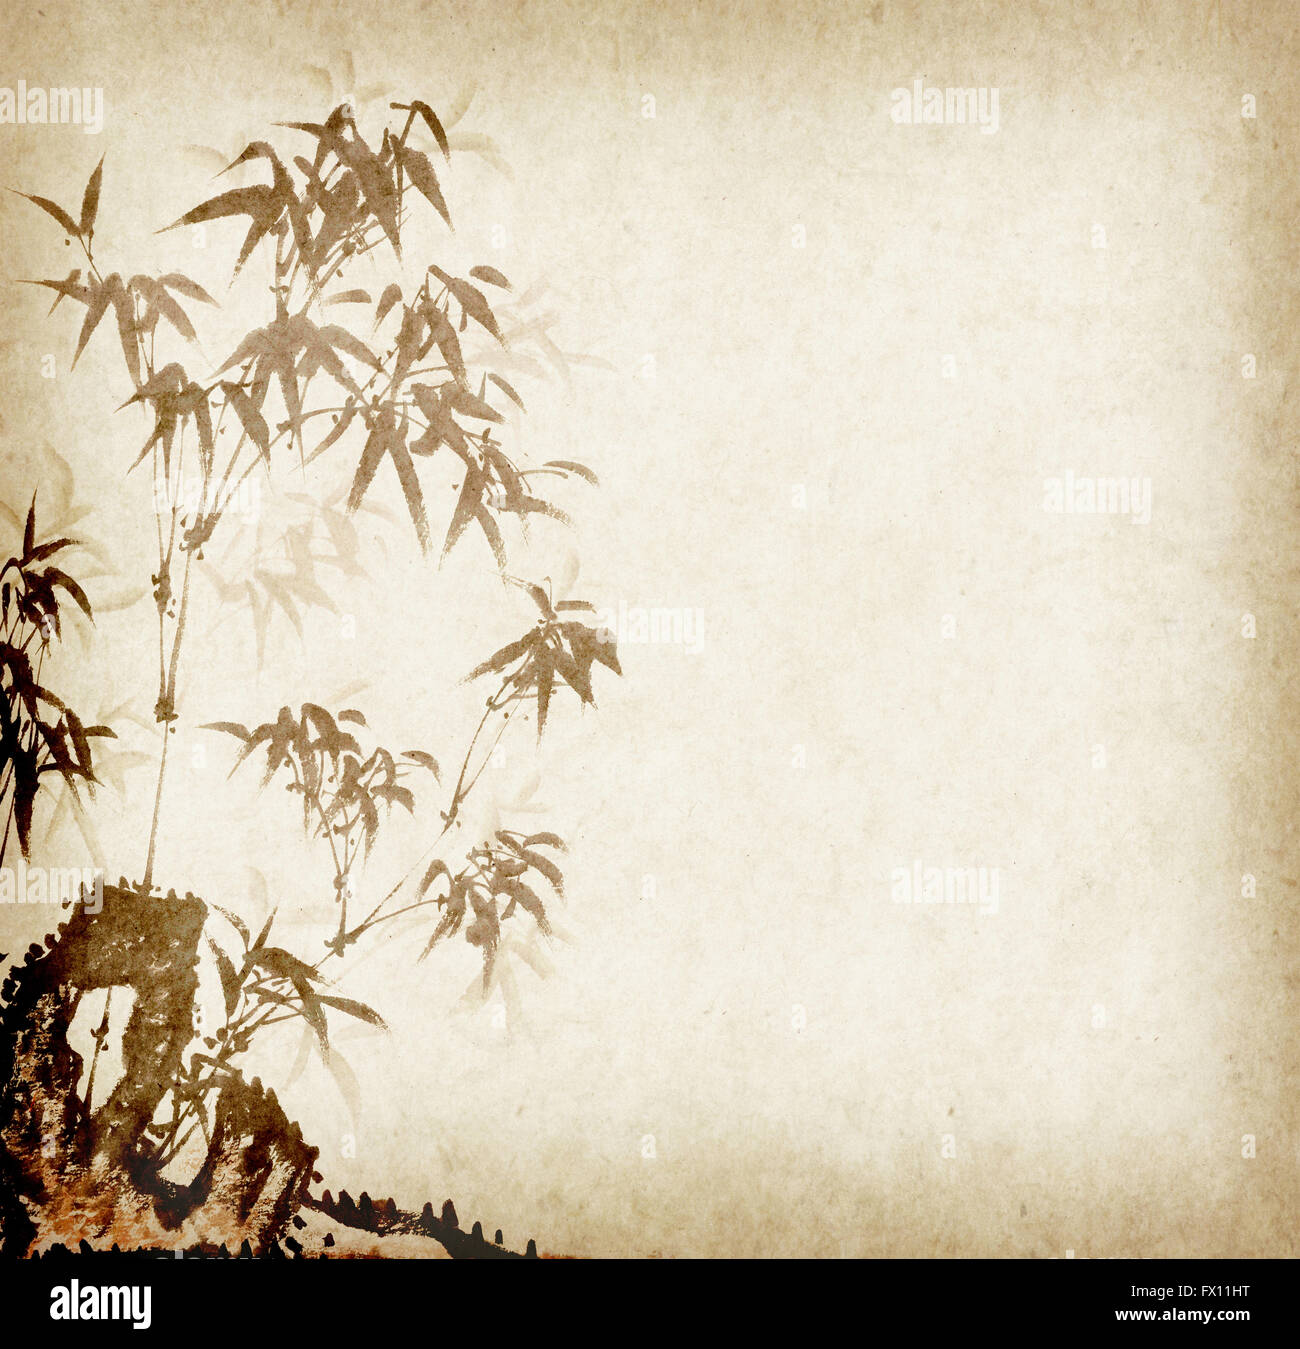 La peinture traditionnelle chinoise bambou sur fond de papier ancien Banque D'Images